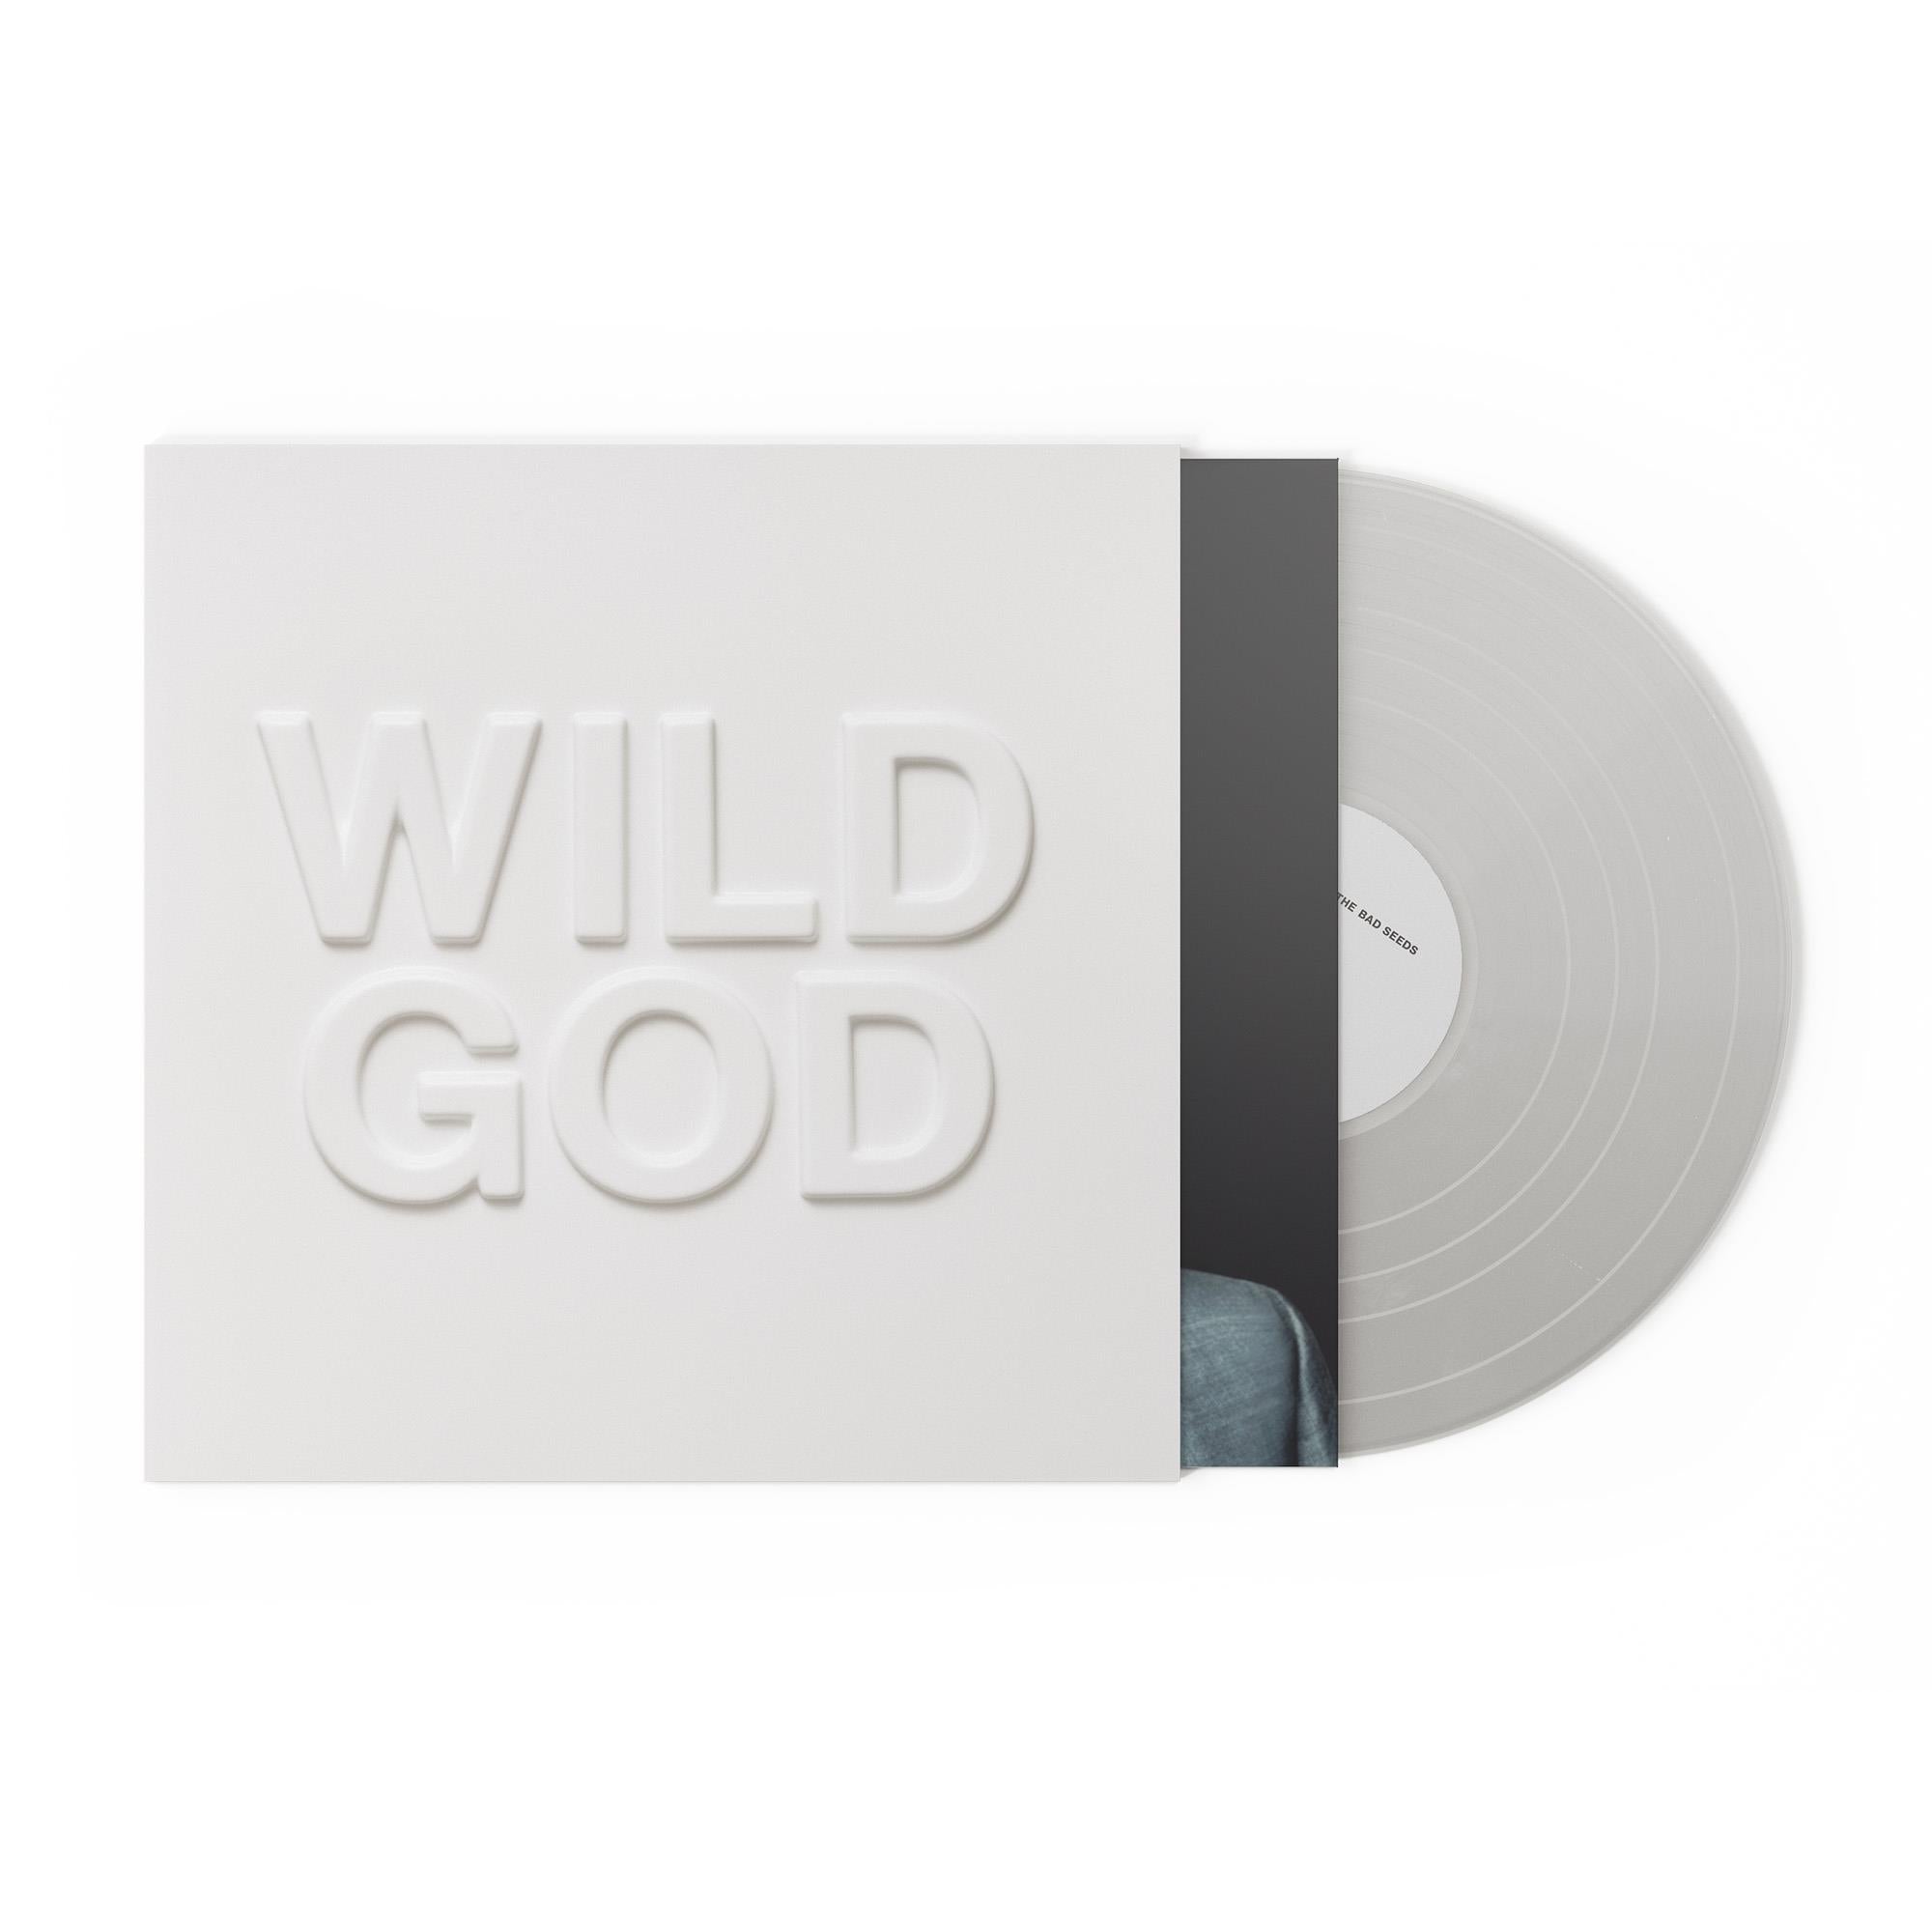 wild god (clear colour vinyl)